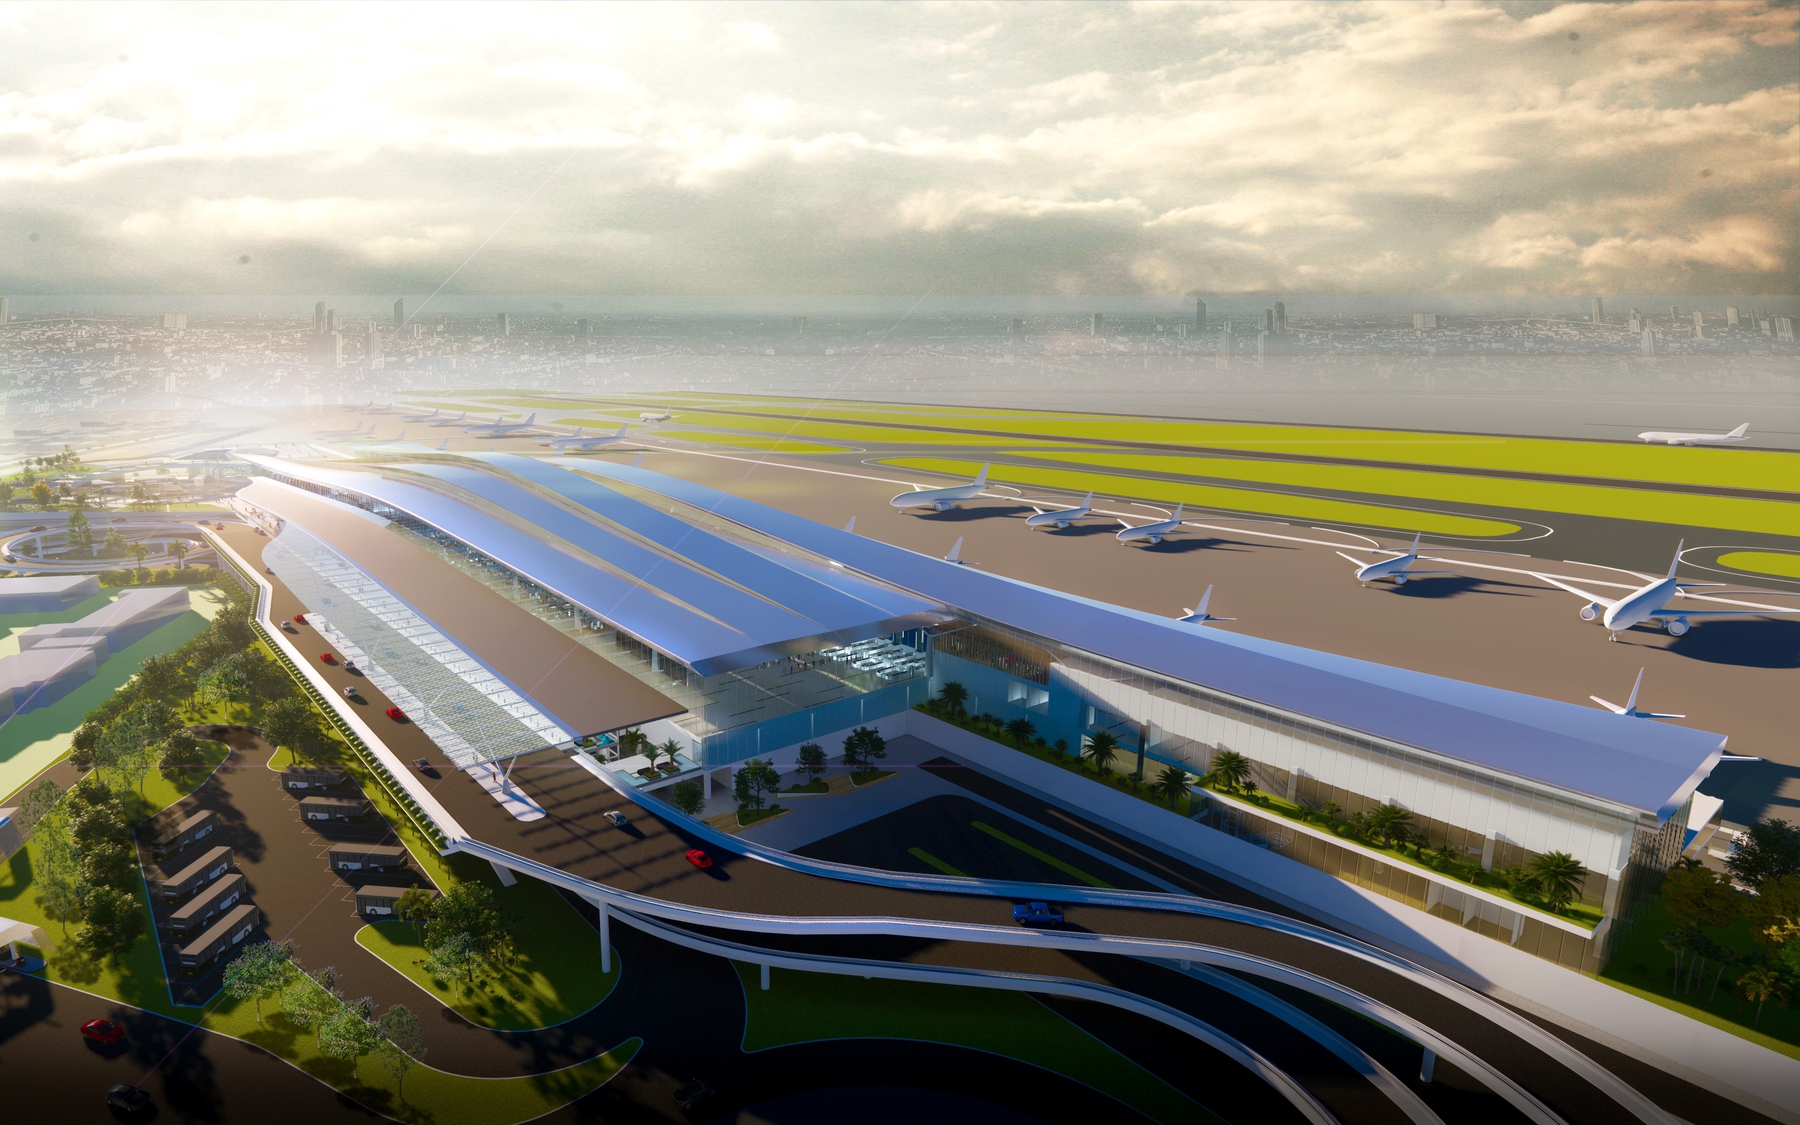 Hé lộ thiết kế nhà ga T3 sân bay Tân Sơn Nhất, có gì đặc biệt?